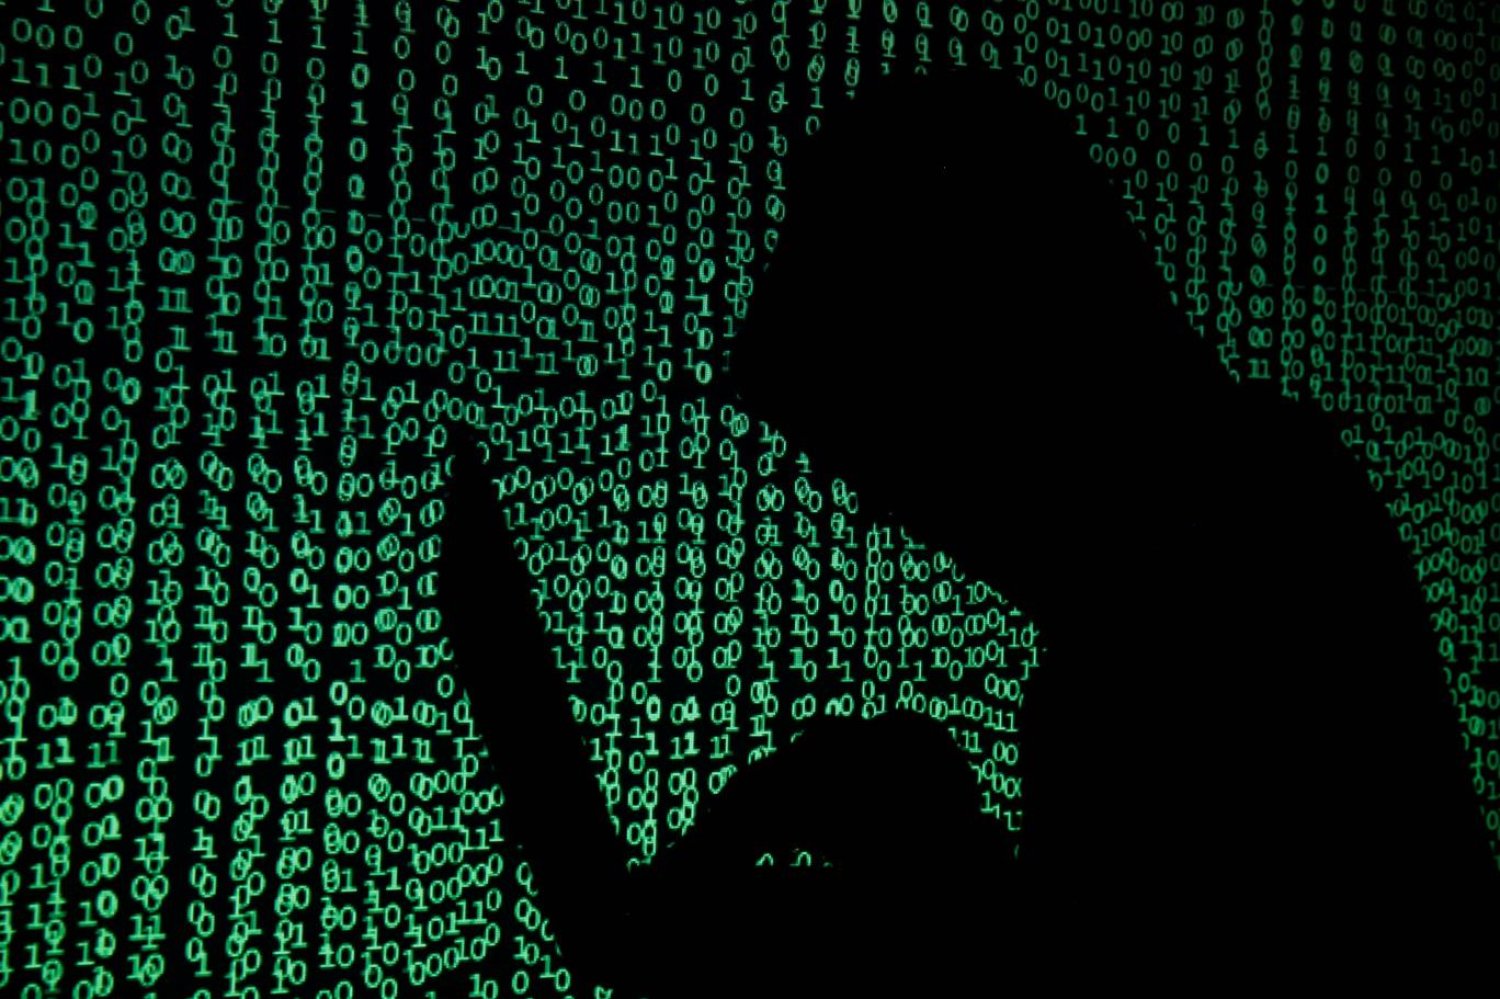 İsrail, yerel siber savunma sistemlerini "Siber Kubbe'yle" tek bir ağda birleştirmek istiyor (Reuters)